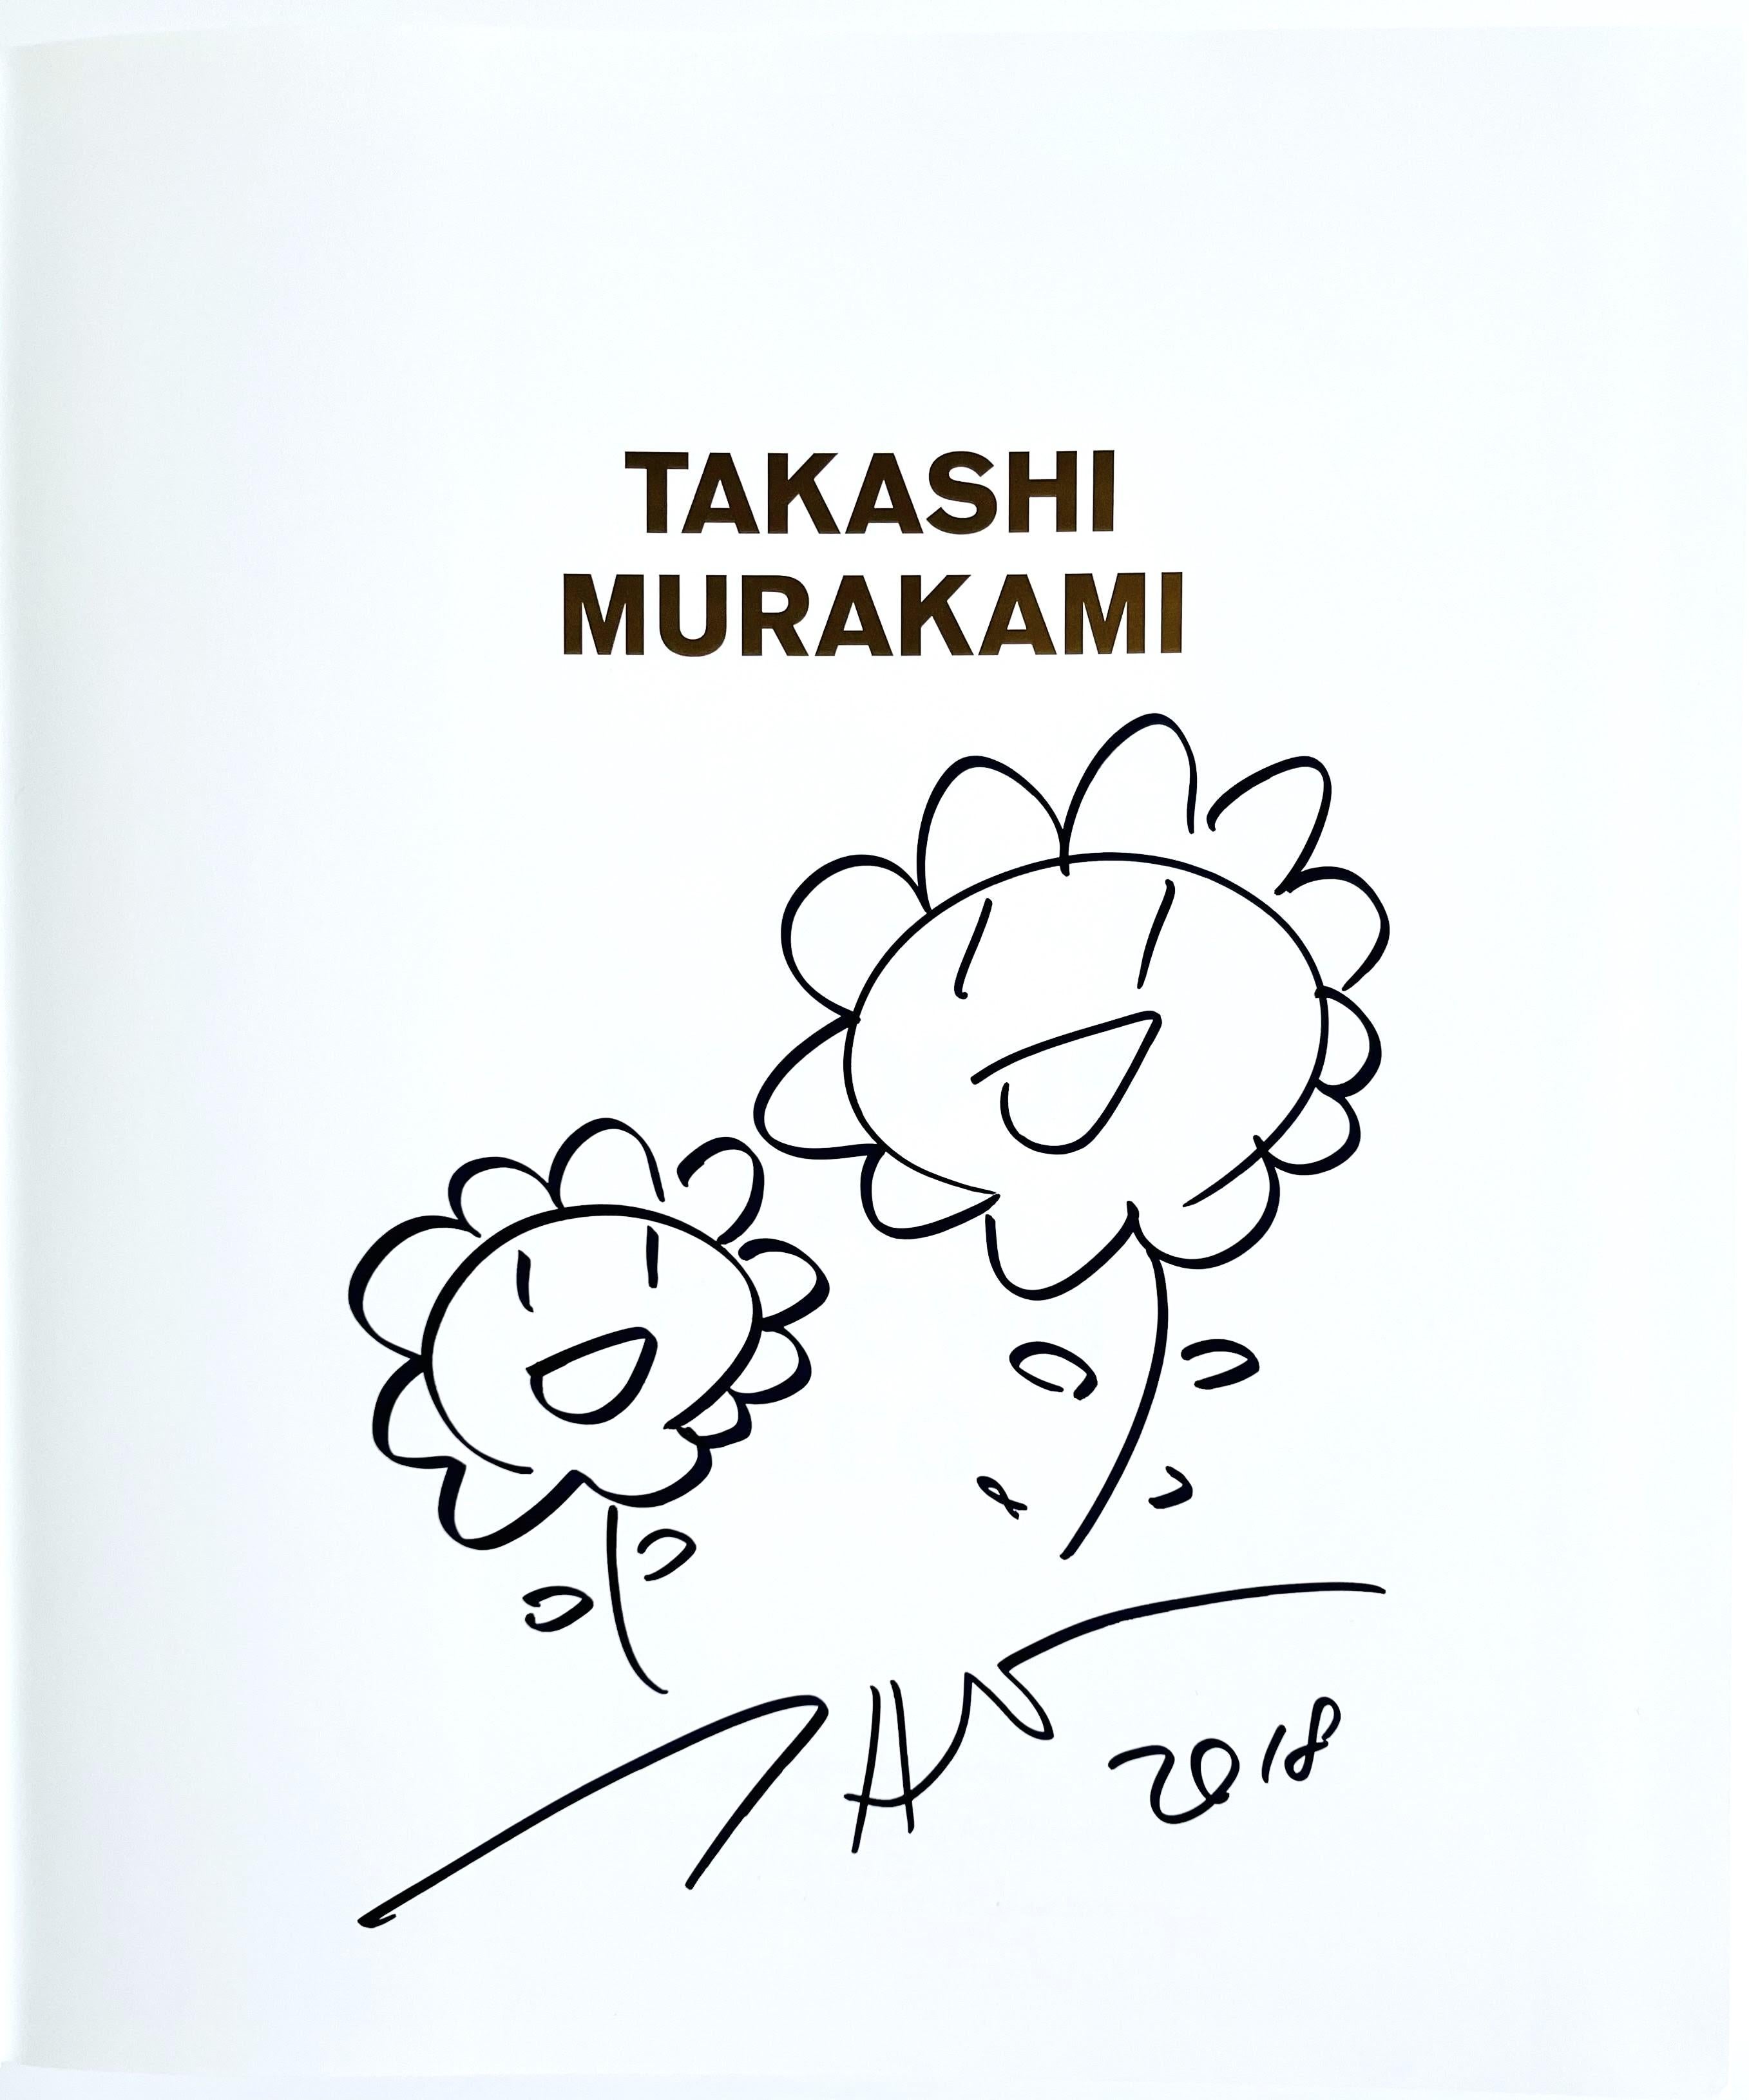 Takashi Murakami
Einzigartige Zeichnung (Zwei Blumen) für das Modern Art Museum, Ft. Worth, Texas, 2018
Originalzeichnung mit Marker, gebunden auf der Titelseite der gebundenen Monographie
Signiert von Murakami direkt unter der Zeichnung
11 × 9 1/2